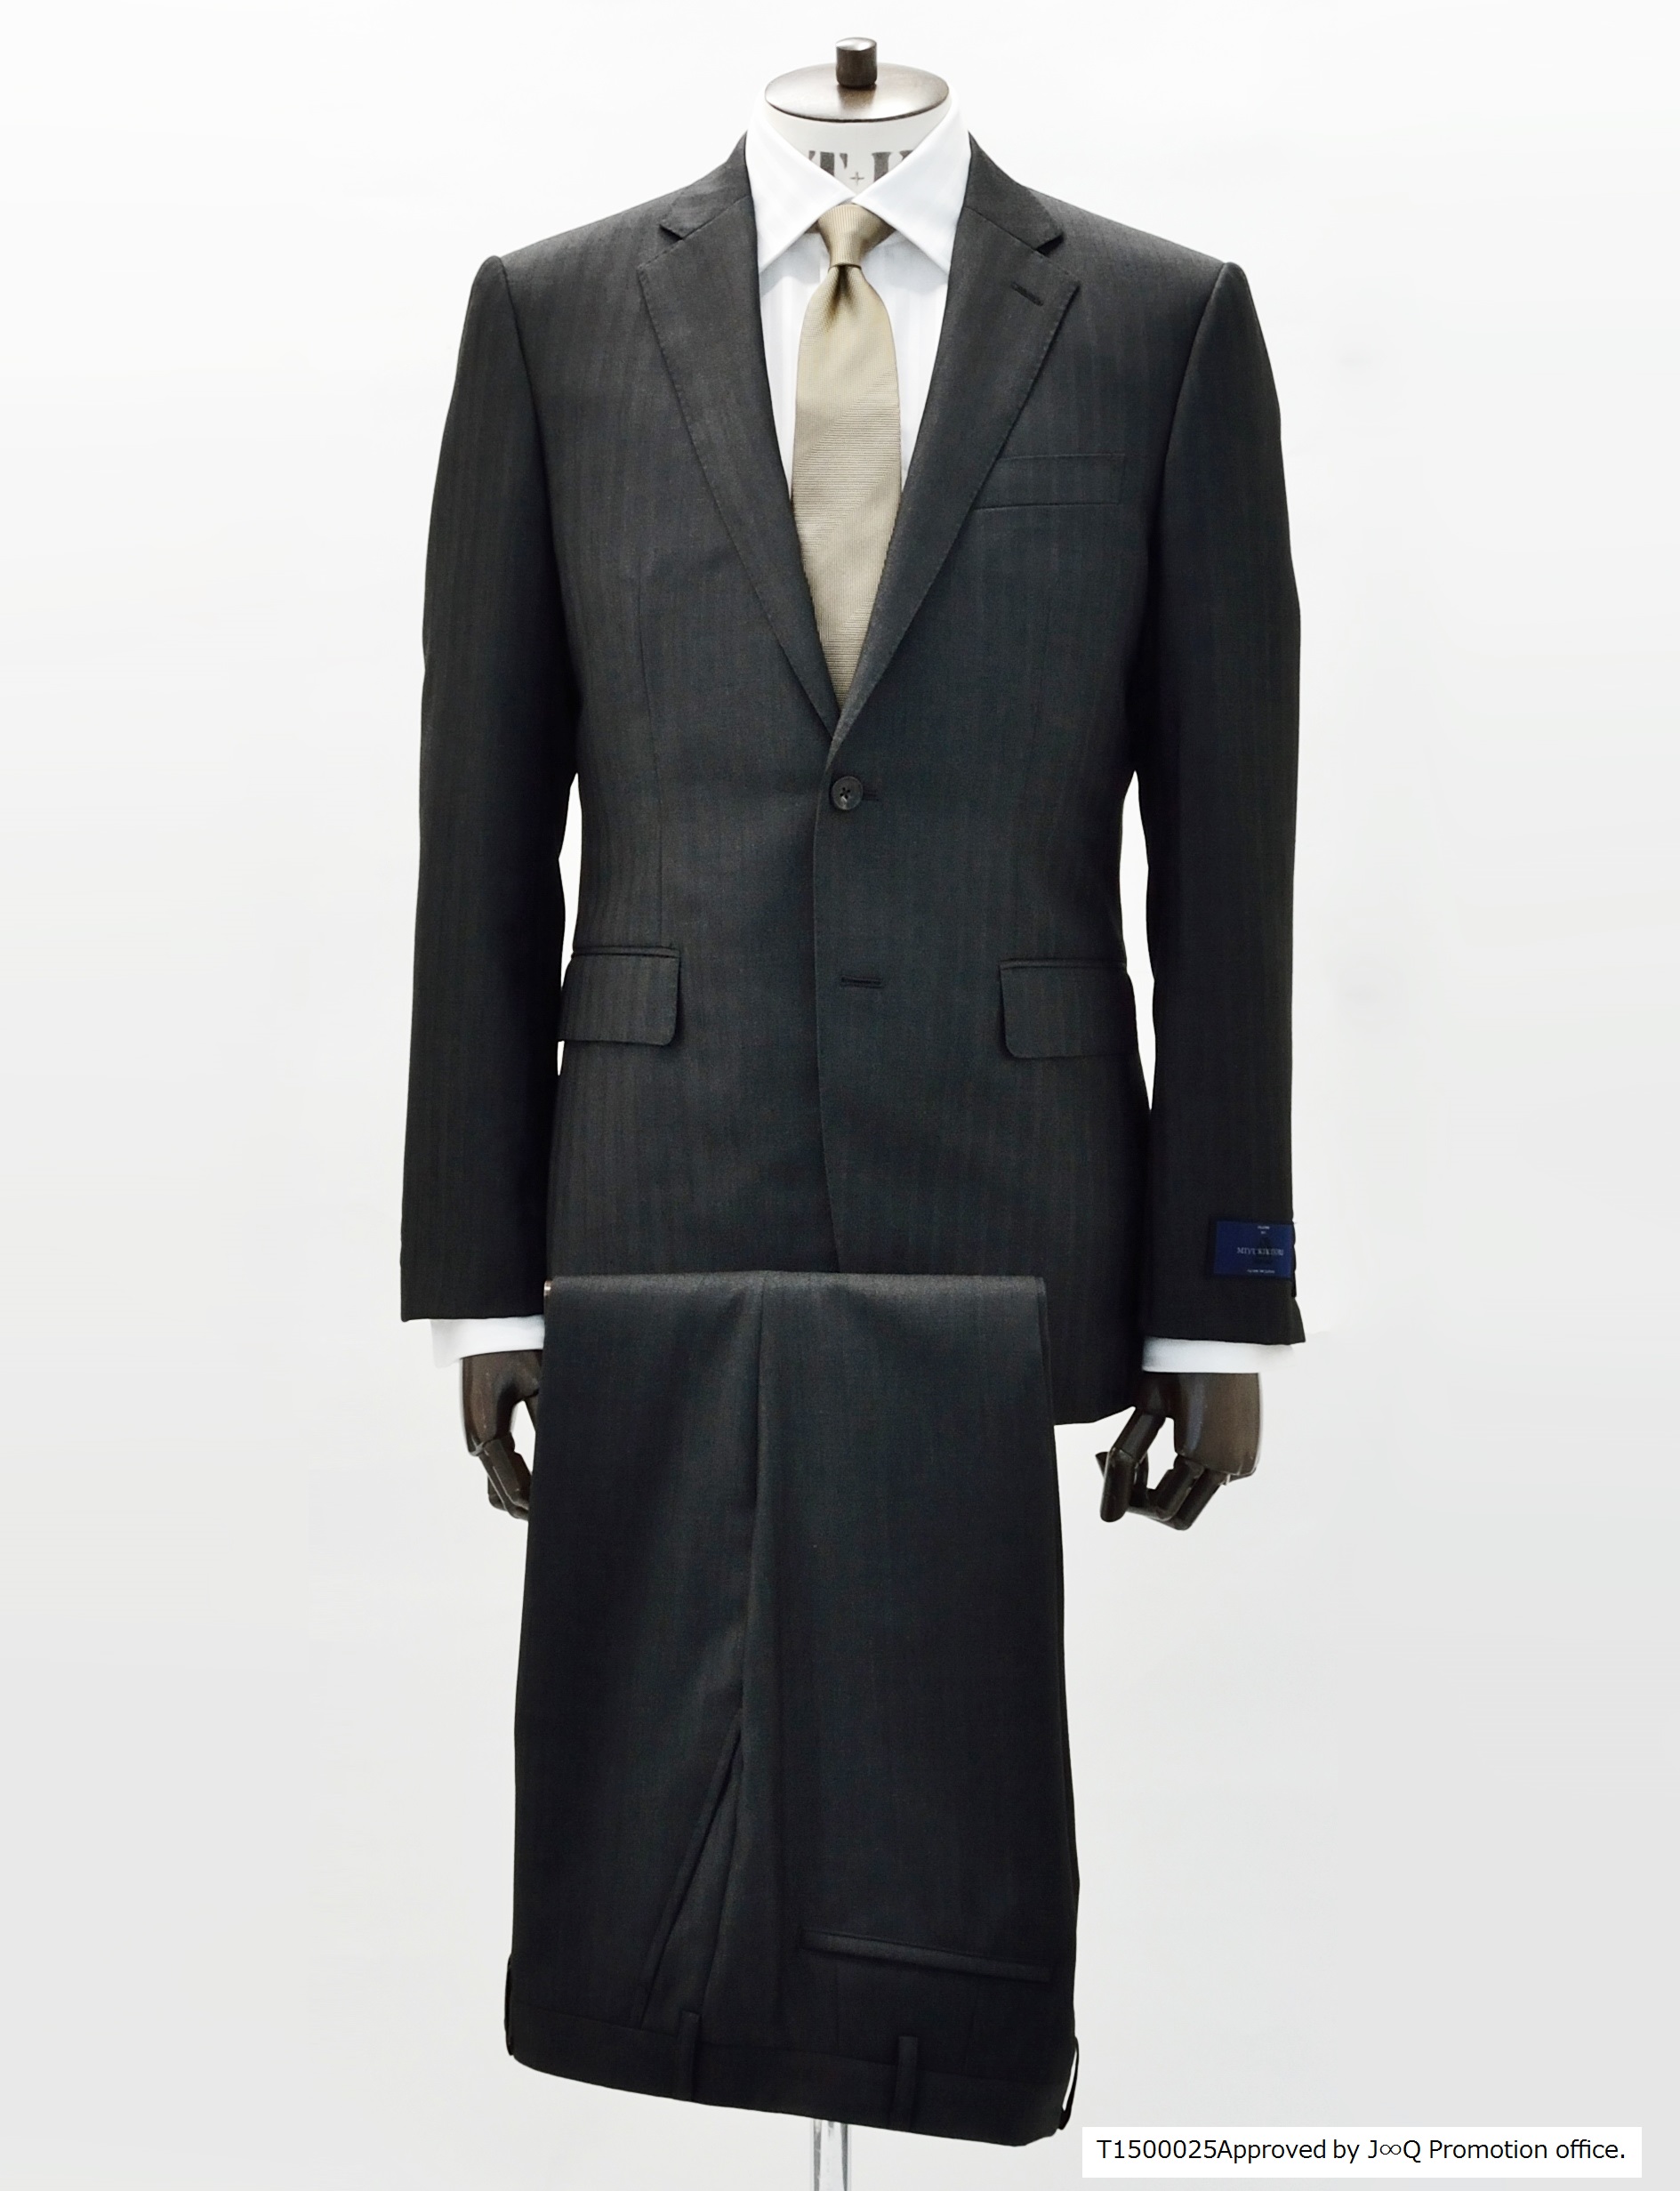 メンズブランド「タケオキクチ」 スーツ、ジャケット、シャツ6品番で「J∞QUALITY」商品認証を取得｜株式会社 ワールドのプレスリリース